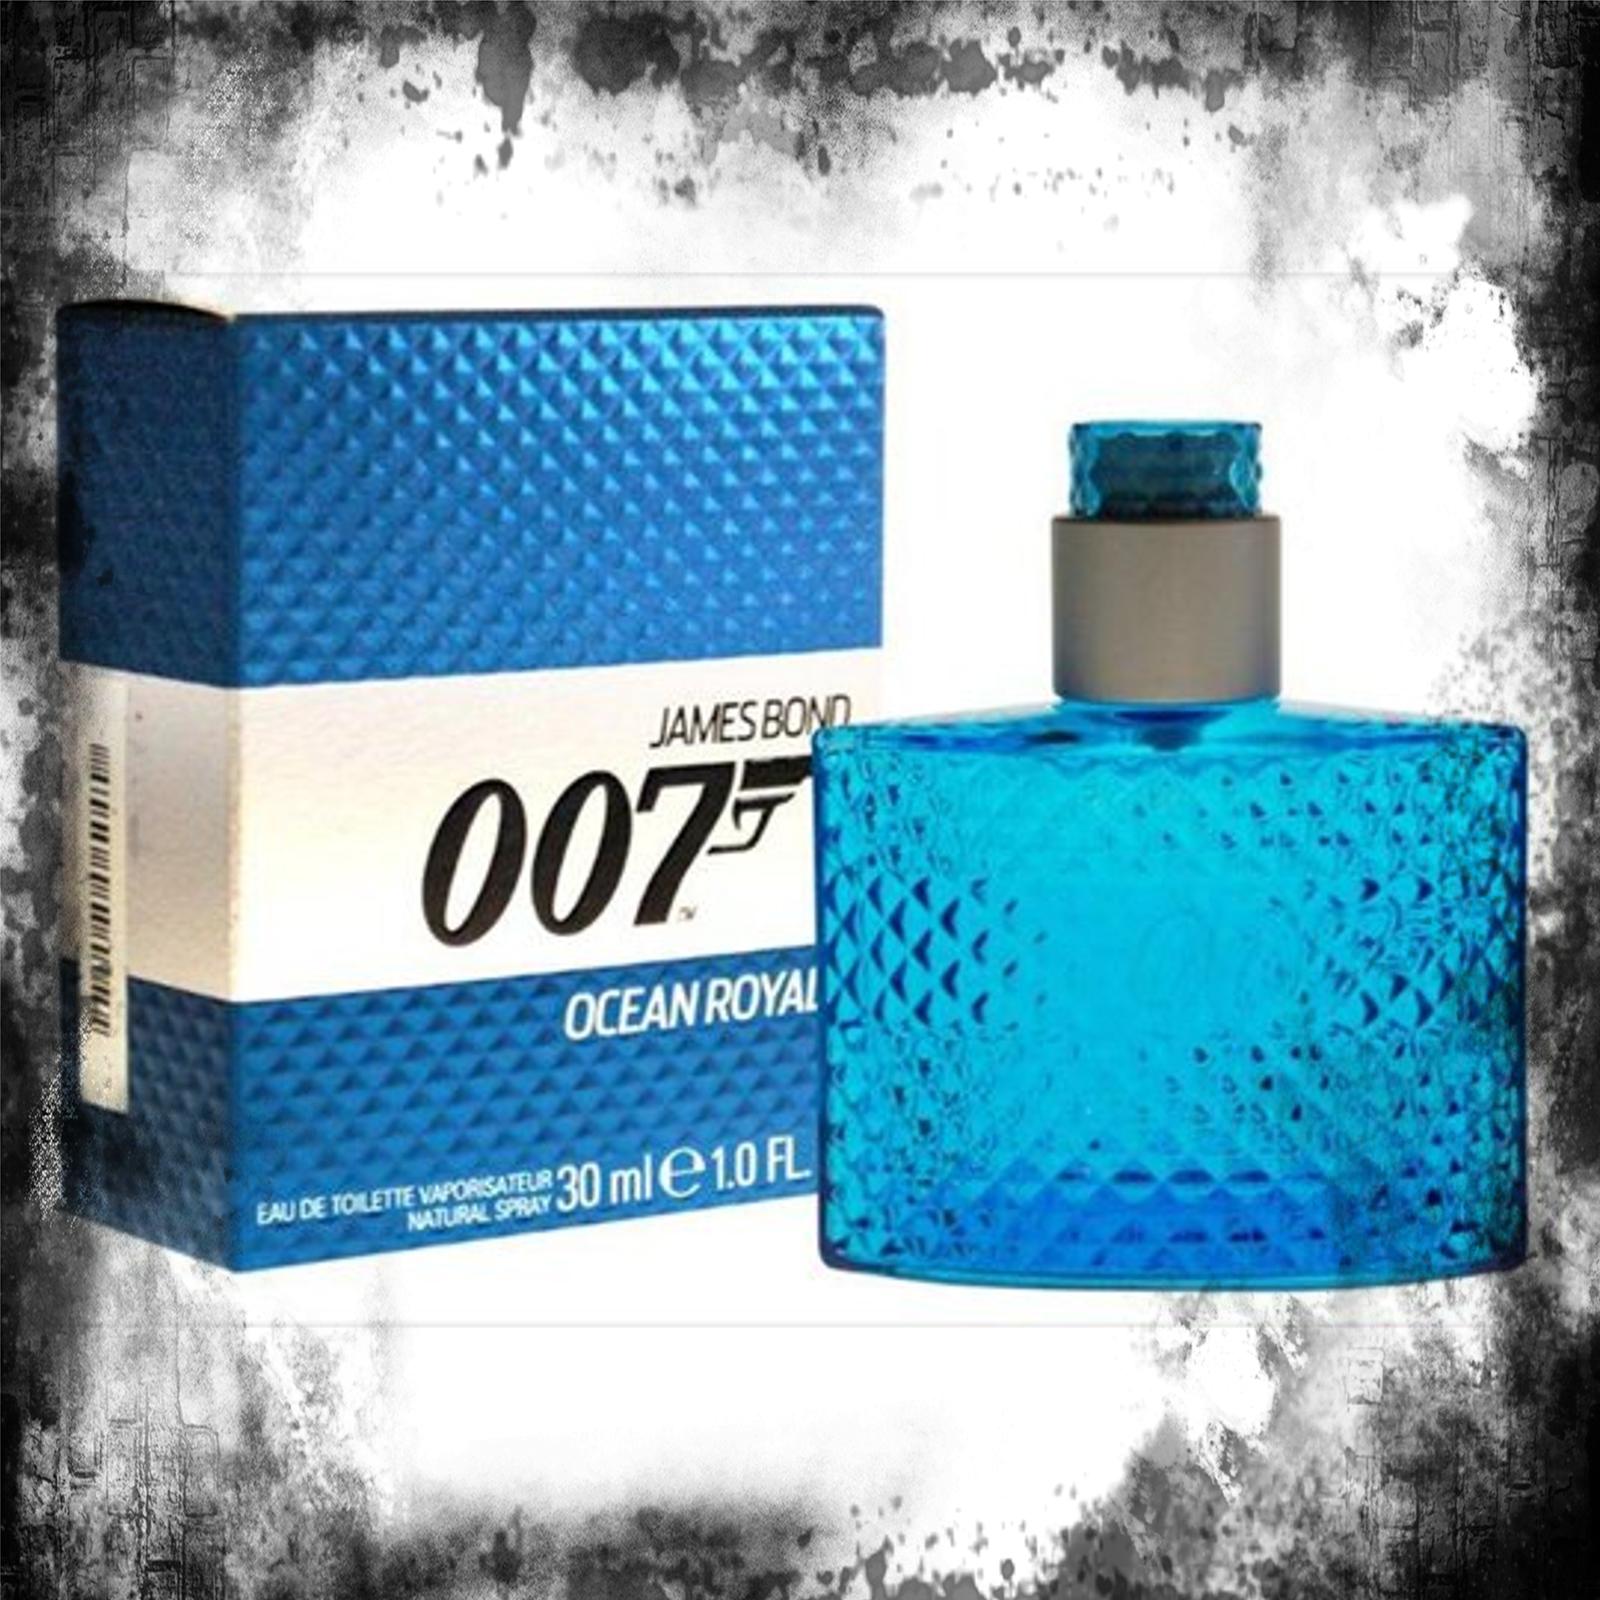 James Bond 007 Ocean Royale Eau de Toilette